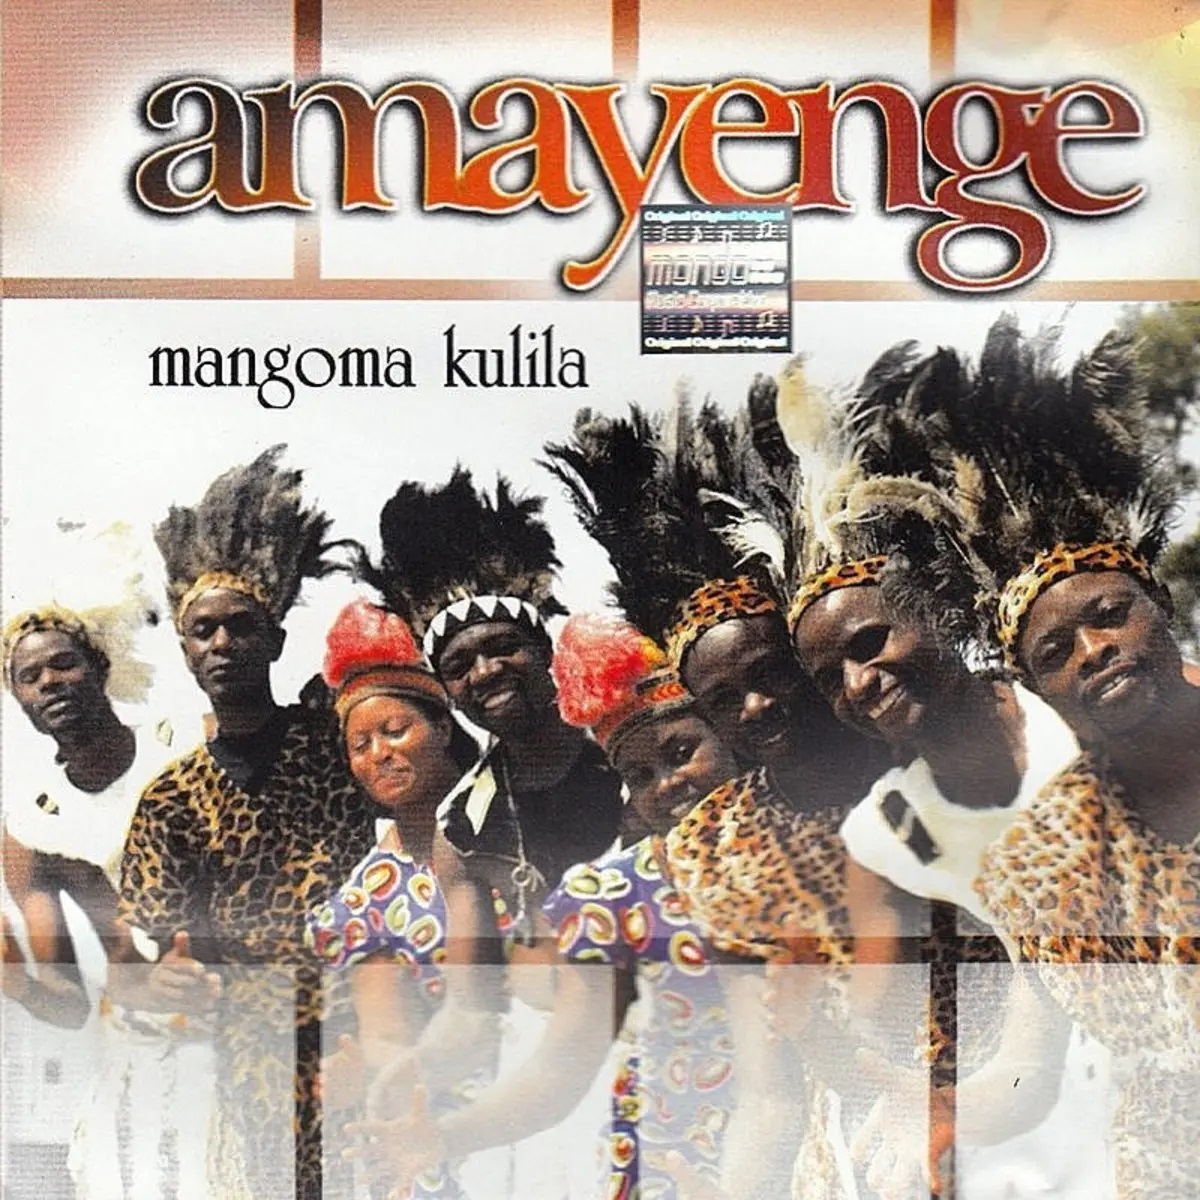 Mangoma Kulila by Amayenge | Album